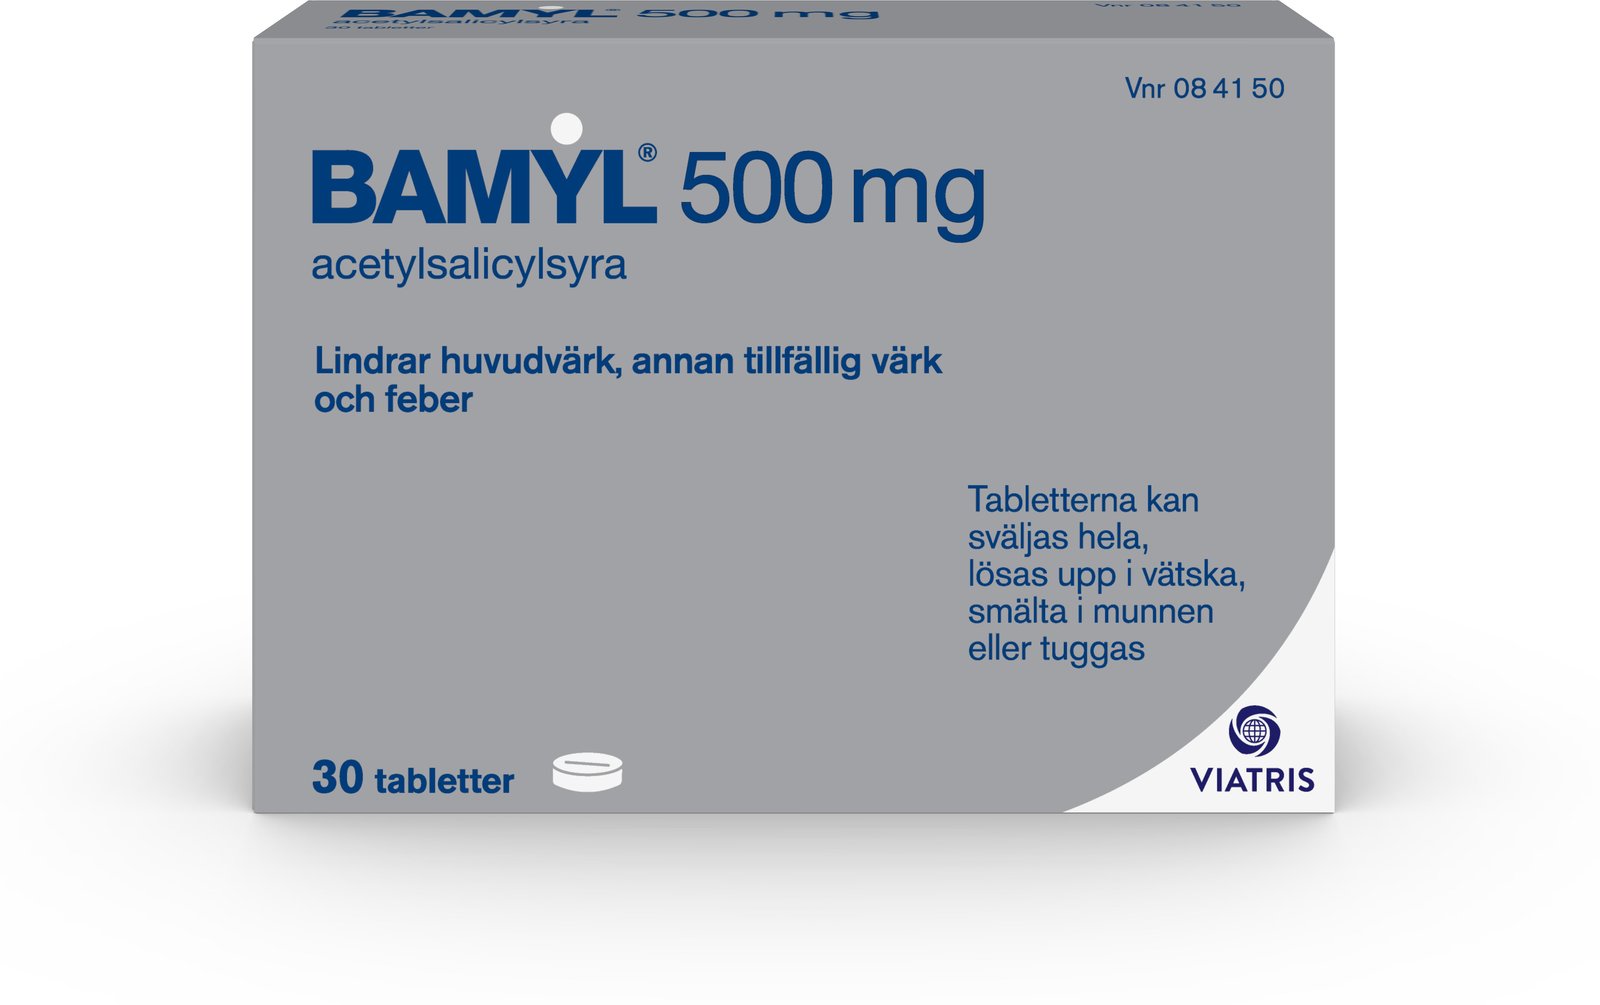 Bamyl 500 mg 30 tabletter